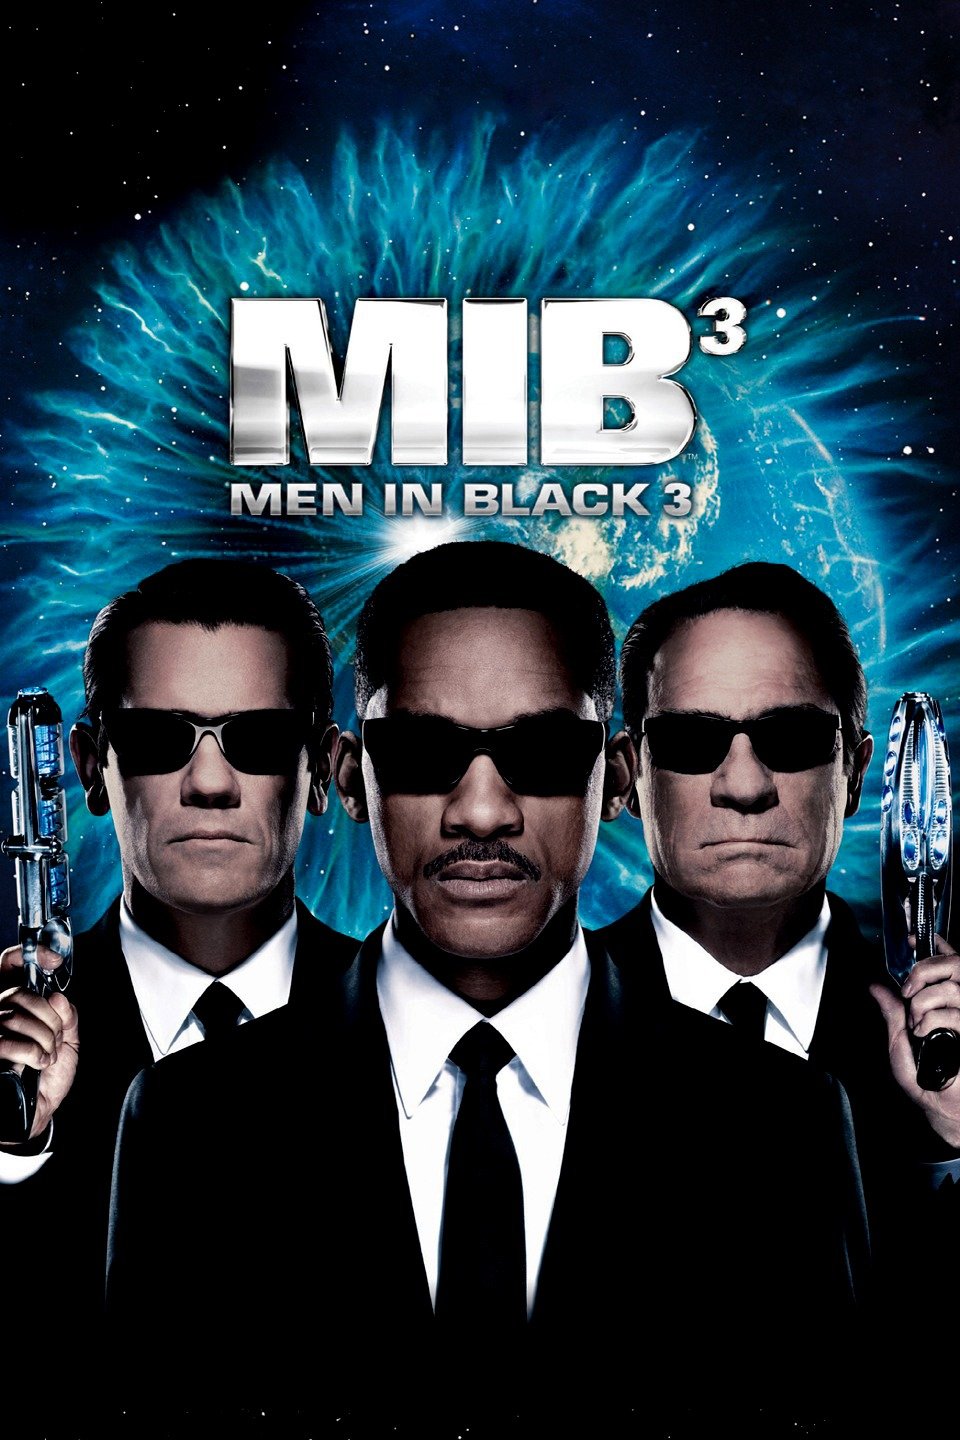 [MINI Super-HQ] Men in Black 3 (2012) เมนอินแบล็ค หน่วยจารชนพิทักษ์จักรวาล ภาค 3 [1080p] [พากษ์ไทย 5.1 + เสียงอังกฤษ DTS] [บรรยายไทย + อังกฤษ] [เสียงไทย + ซับไทย] [OPENLOAD